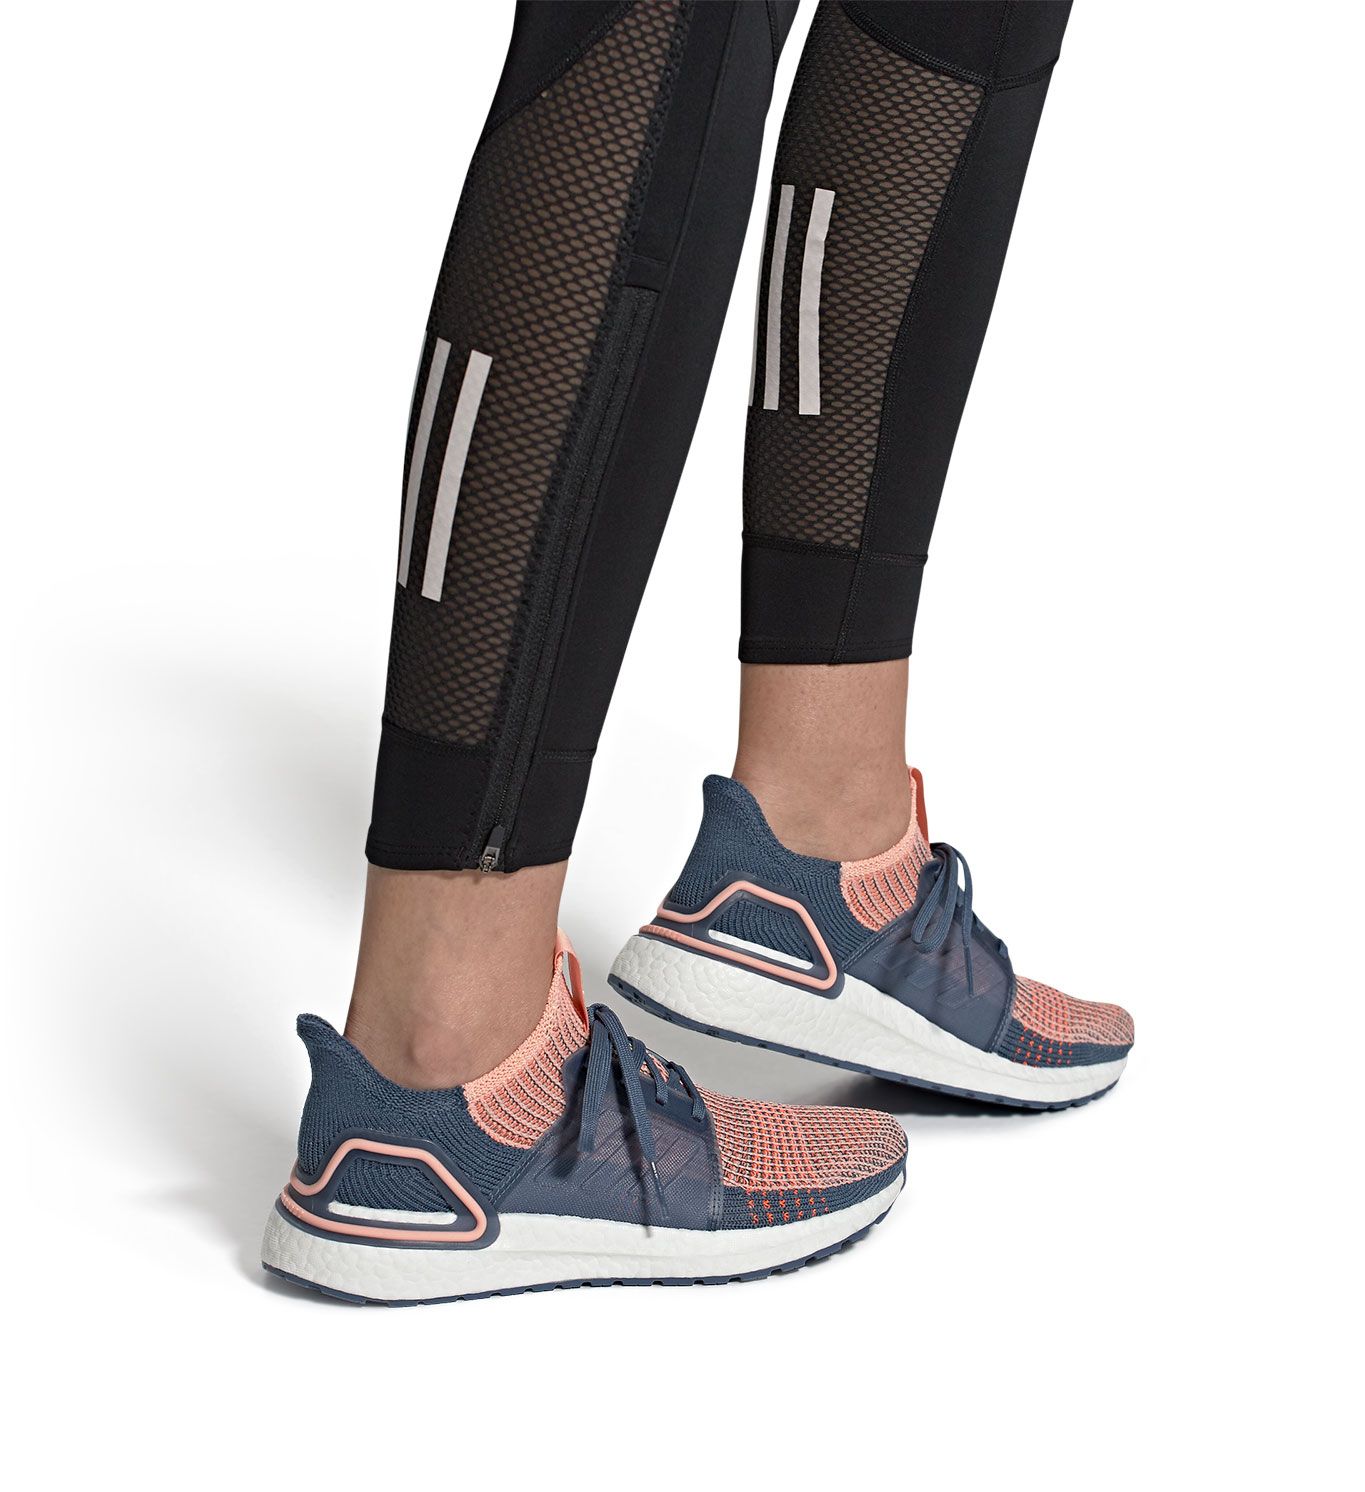 adidas women's ultraboost 19 running shoe